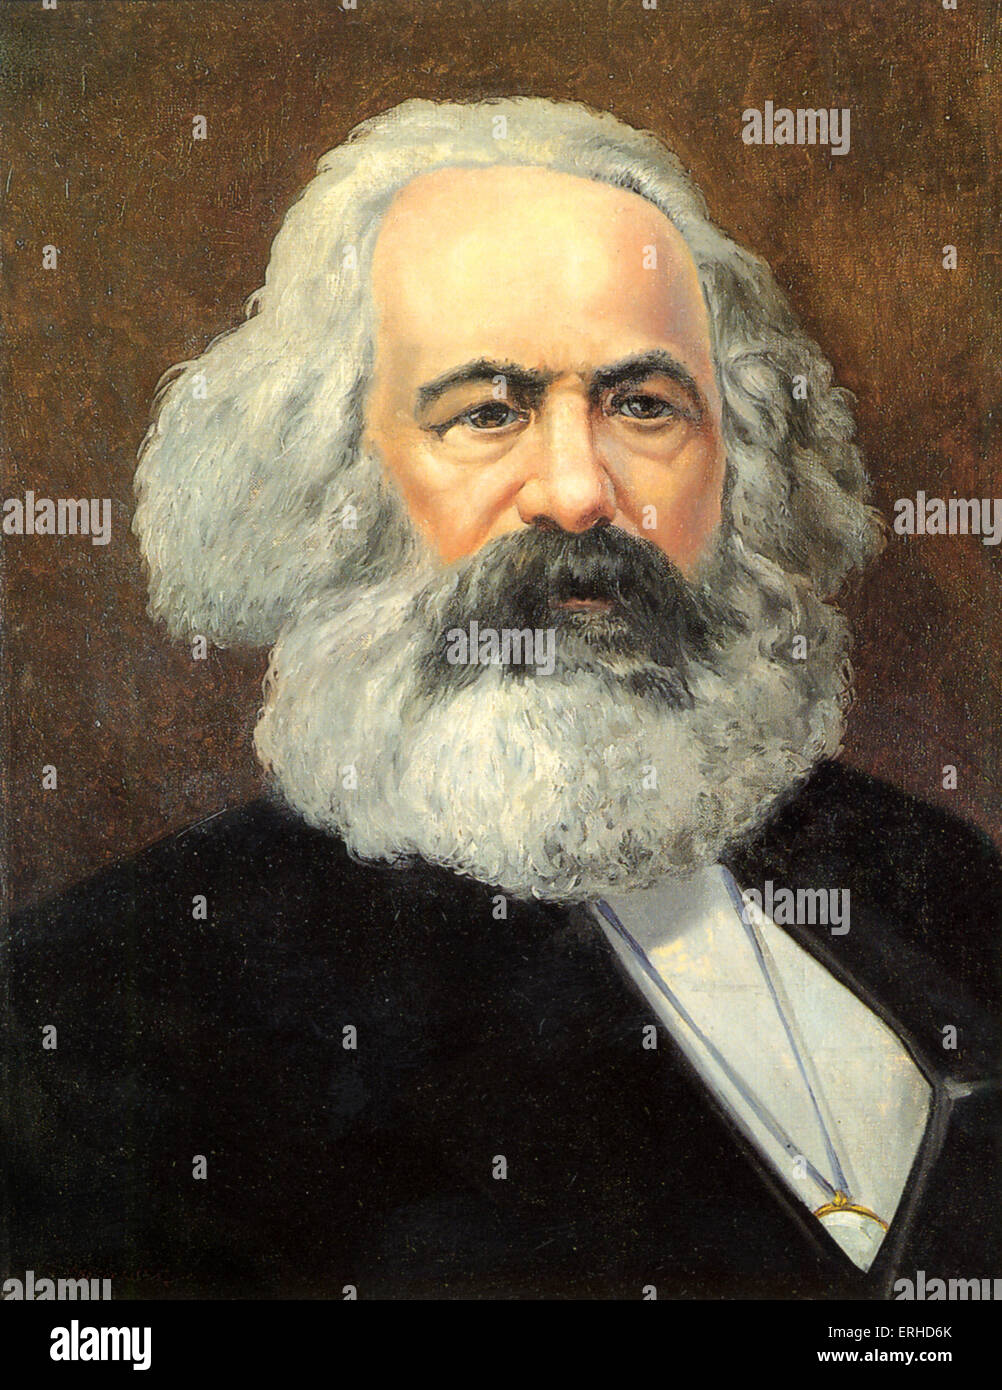 Karl Marx - portrait de l'historien allemand, économiste et révolutionnaire 5 mai 1818 - 14 mars 1883. Banque D'Images